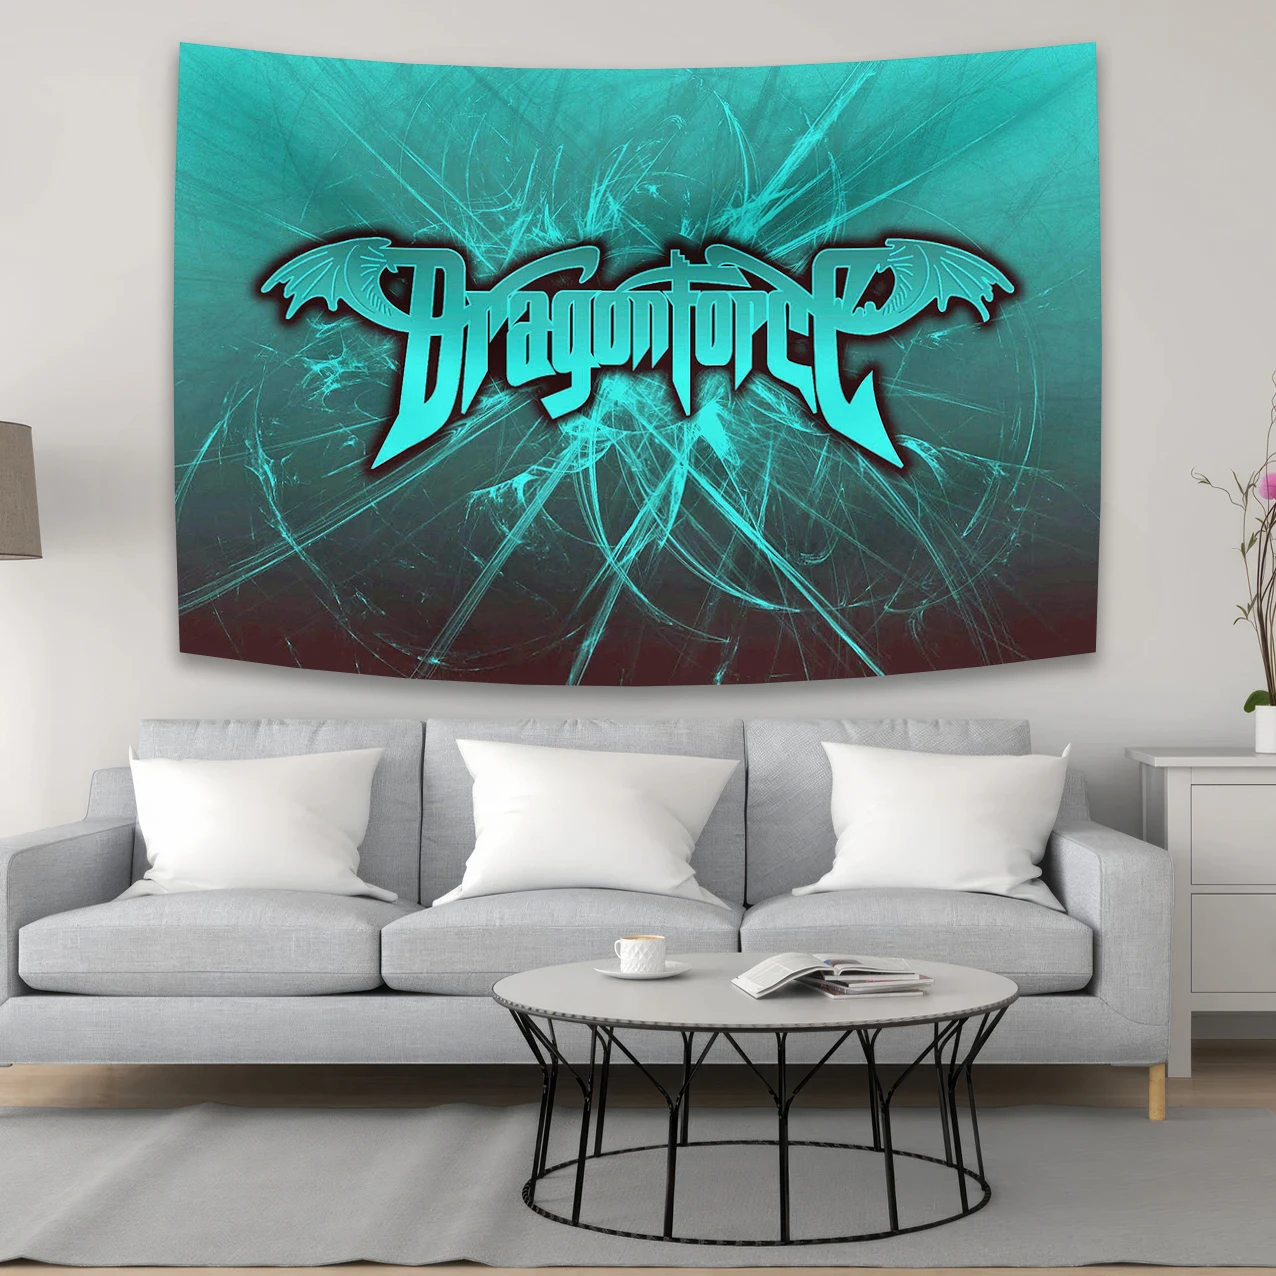 

Декоративный баннер из полиэстера с рисунком в виде стрекозы американской музыкальной группы рок, украшение для дома или спальни, баннер, гобелен